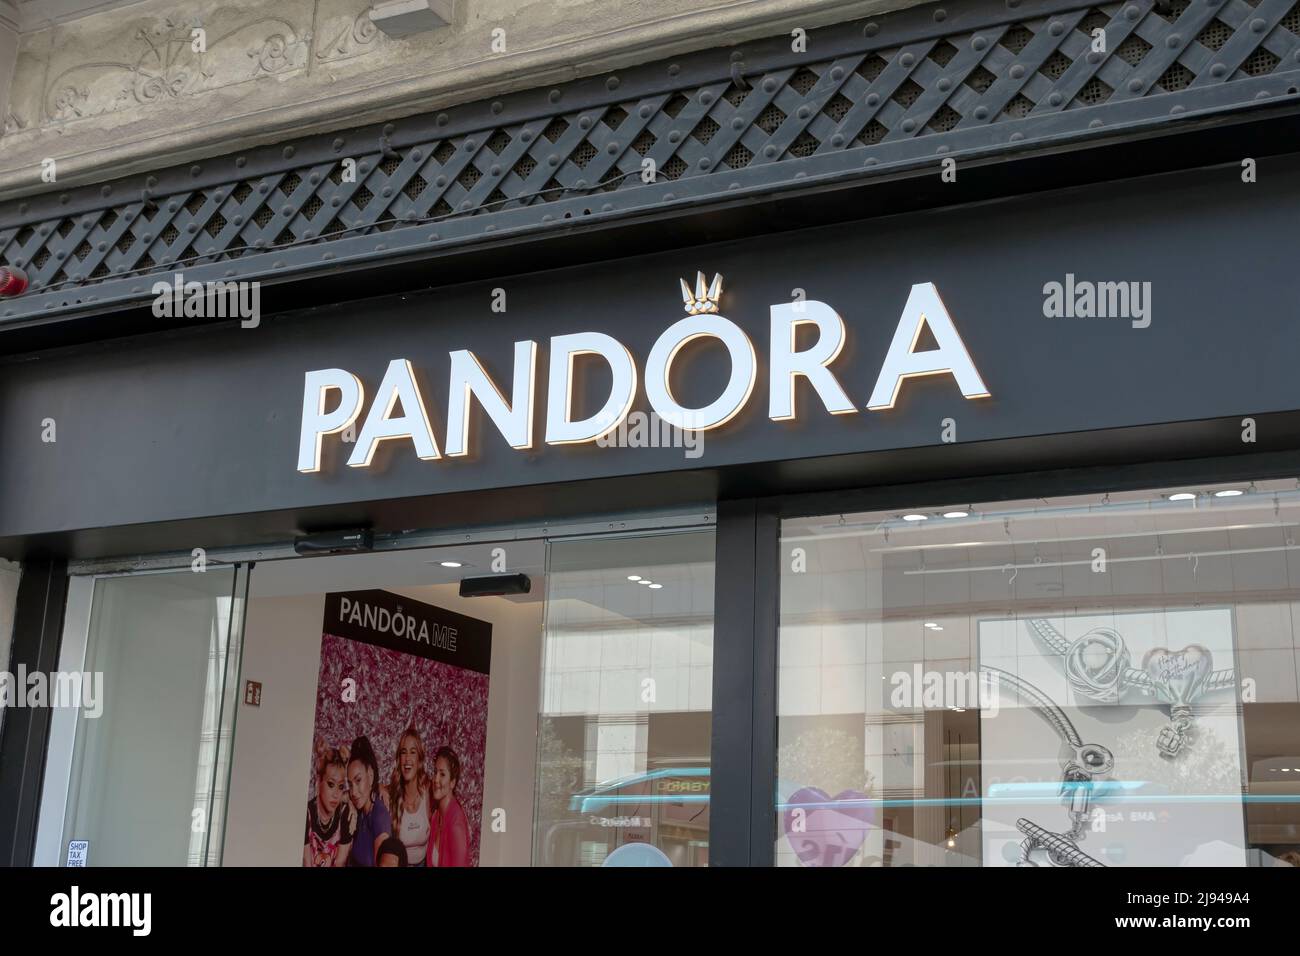 Pandora shop immagini e fotografie stock ad alta risoluzione - Alamy